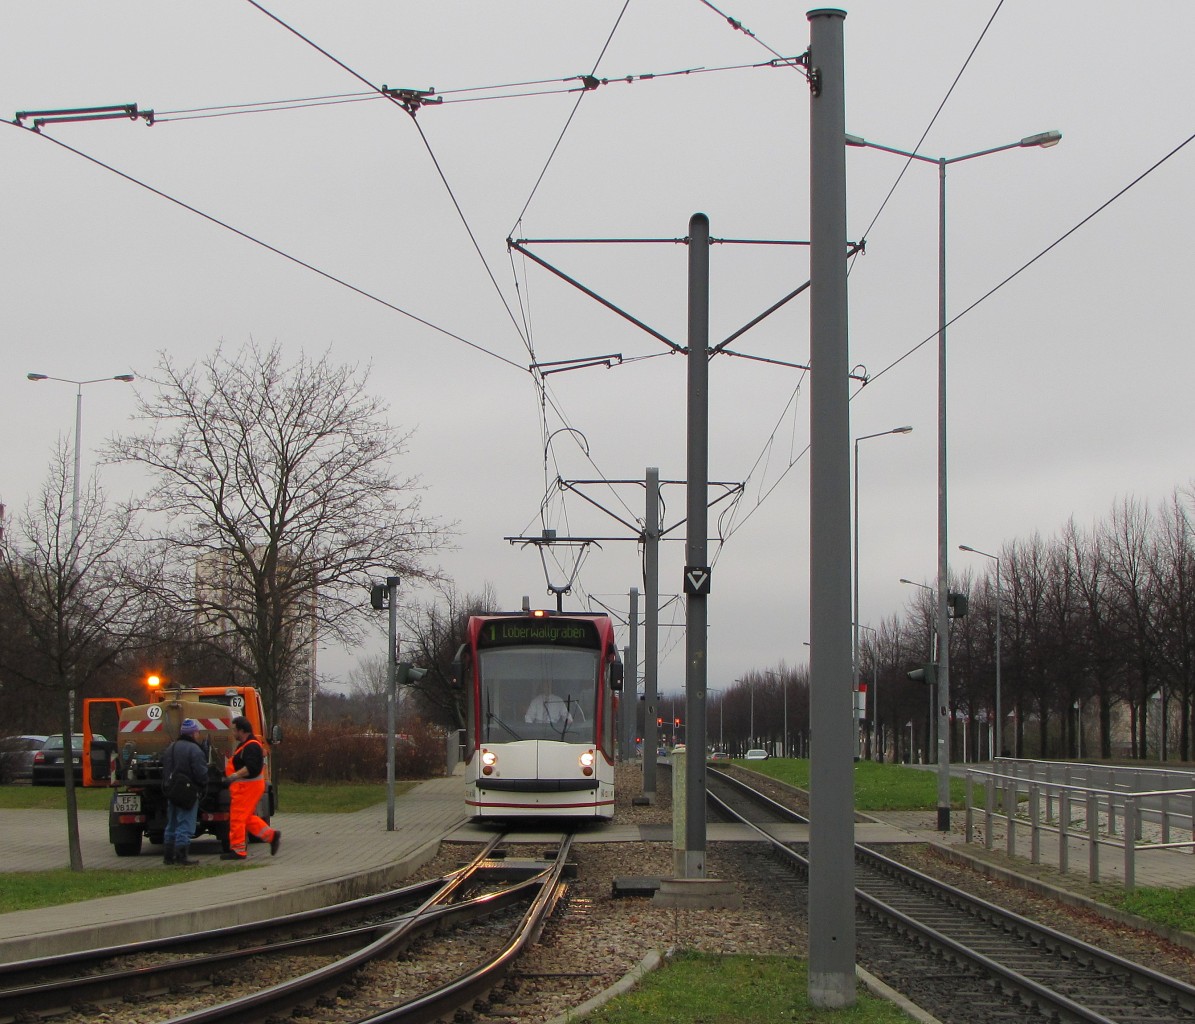 Am 11.12.2013 verkehrte EVAG 640 als Linie 1 wegen einer Demo zum Lberwallgraben und nicht bis zur Thringenhalle. Hier zu sehen an der Endhaltestelle Europaplatz.